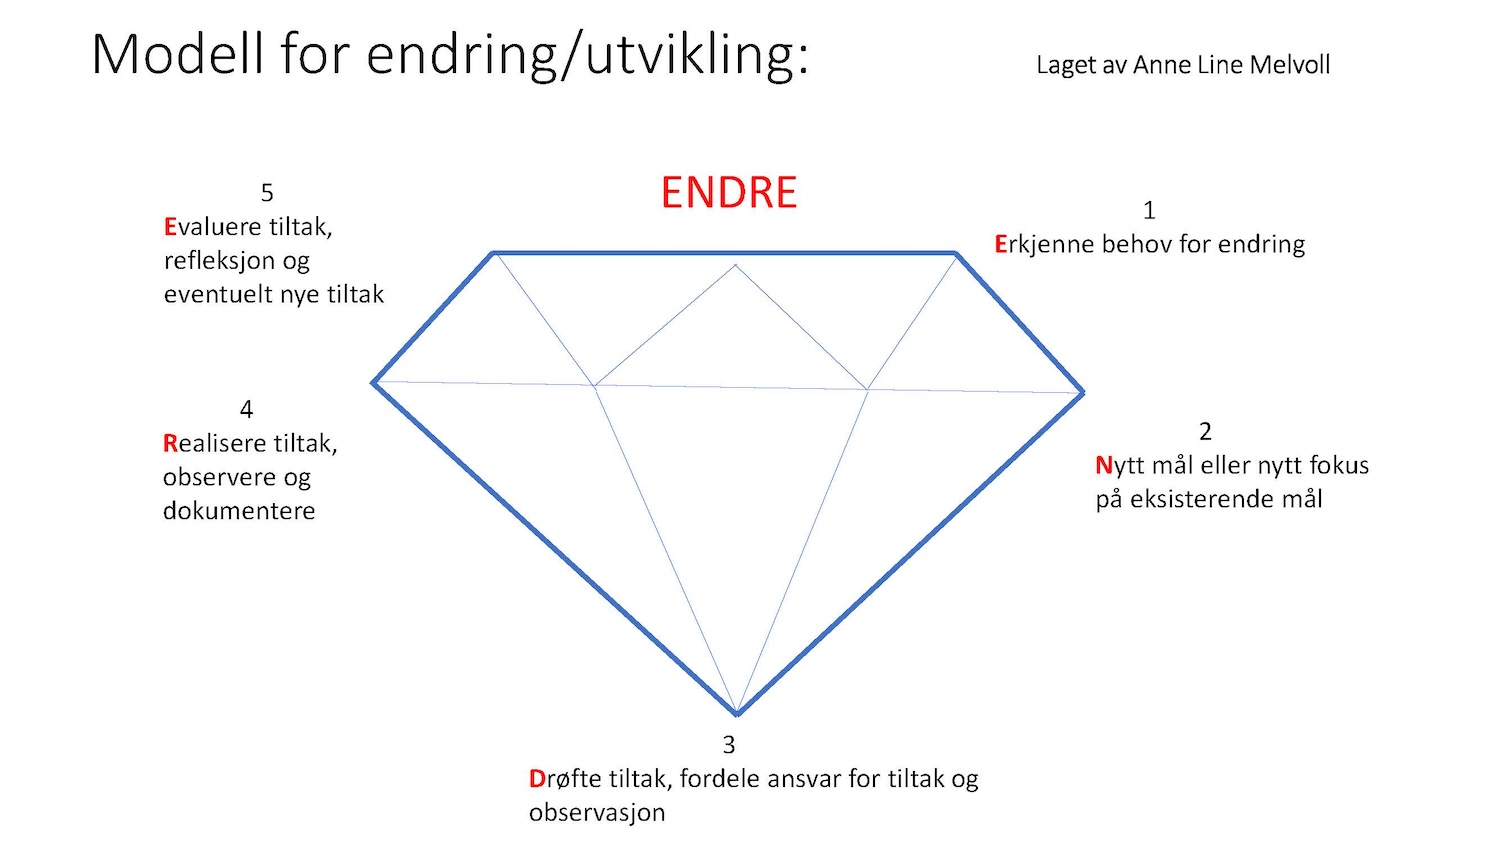 Bildet viser modellen ENDRE formet som en diamant med de fem punktene i hvert hjørne